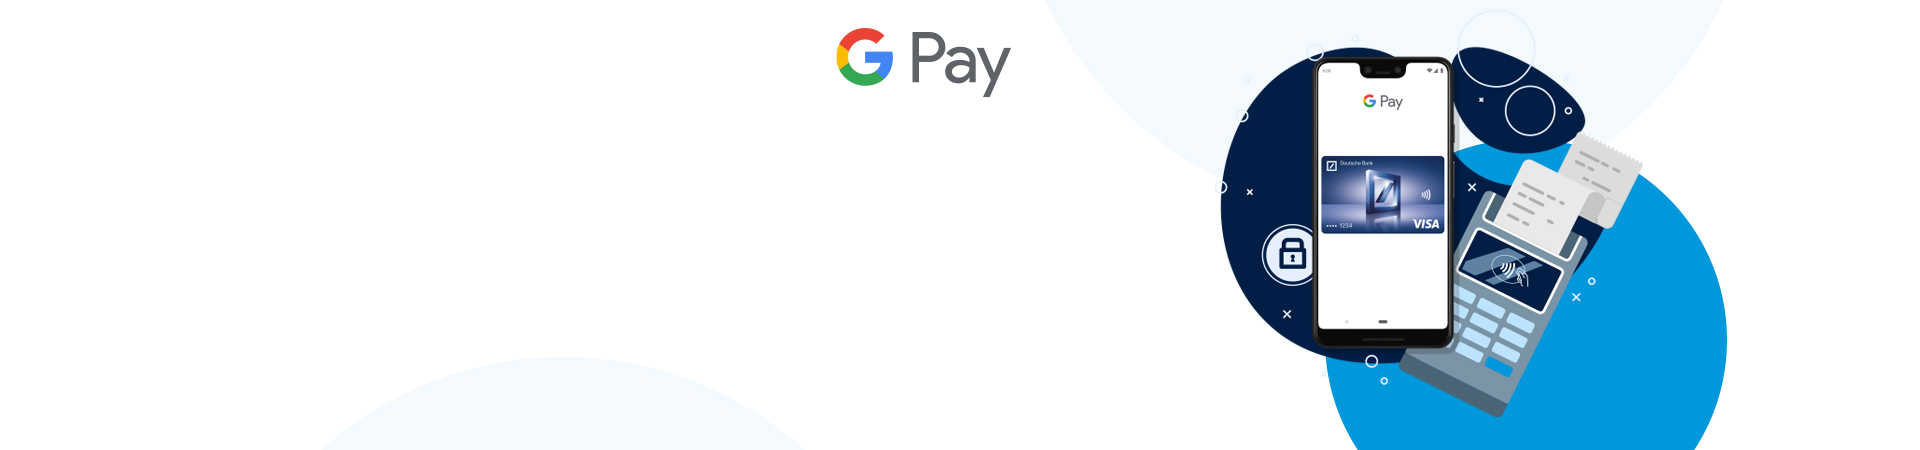 Homepage_stage_desktop_Google_Pay.jpg